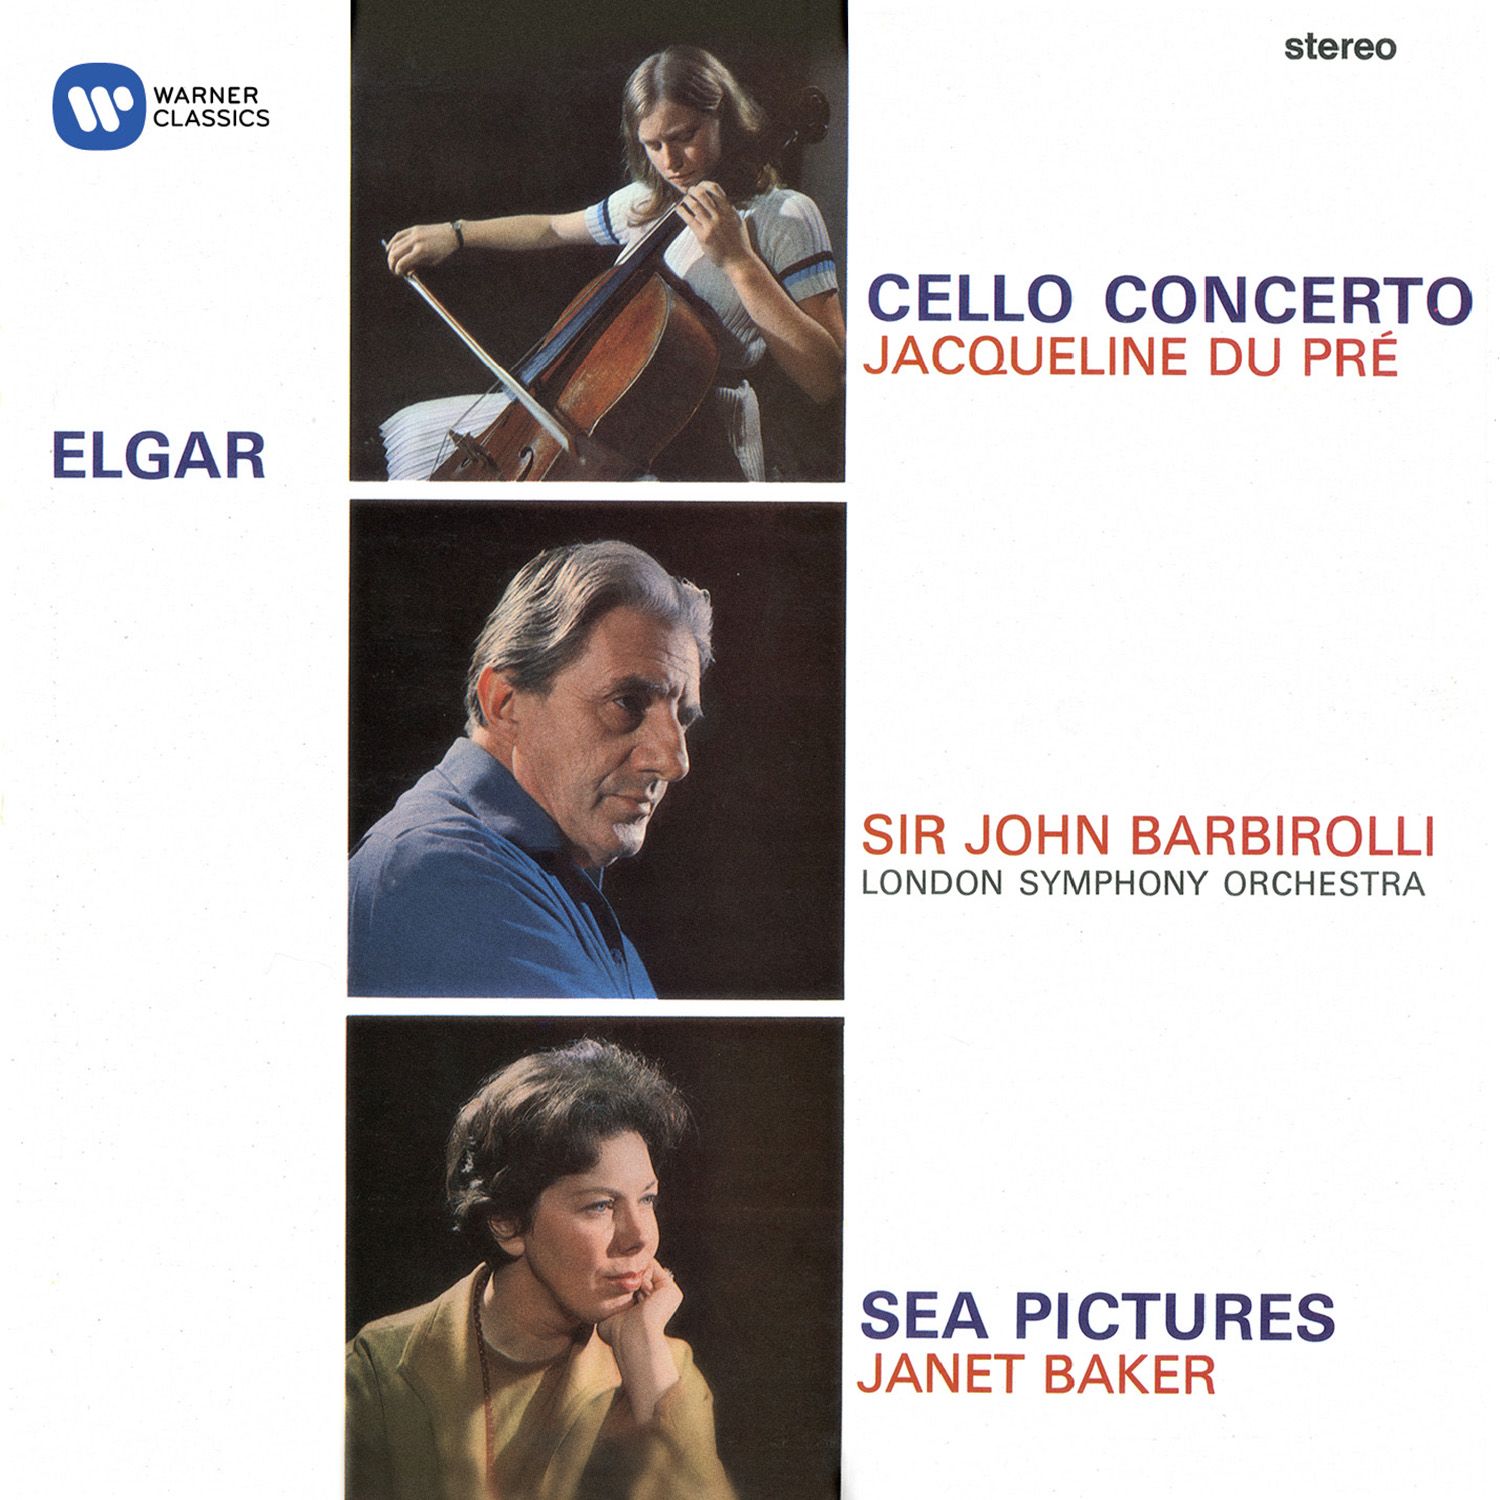 Cello Concerto in E Minor, Op. 85:IV. Allegro - Moderato - Allegro ma non troppo - Adagio